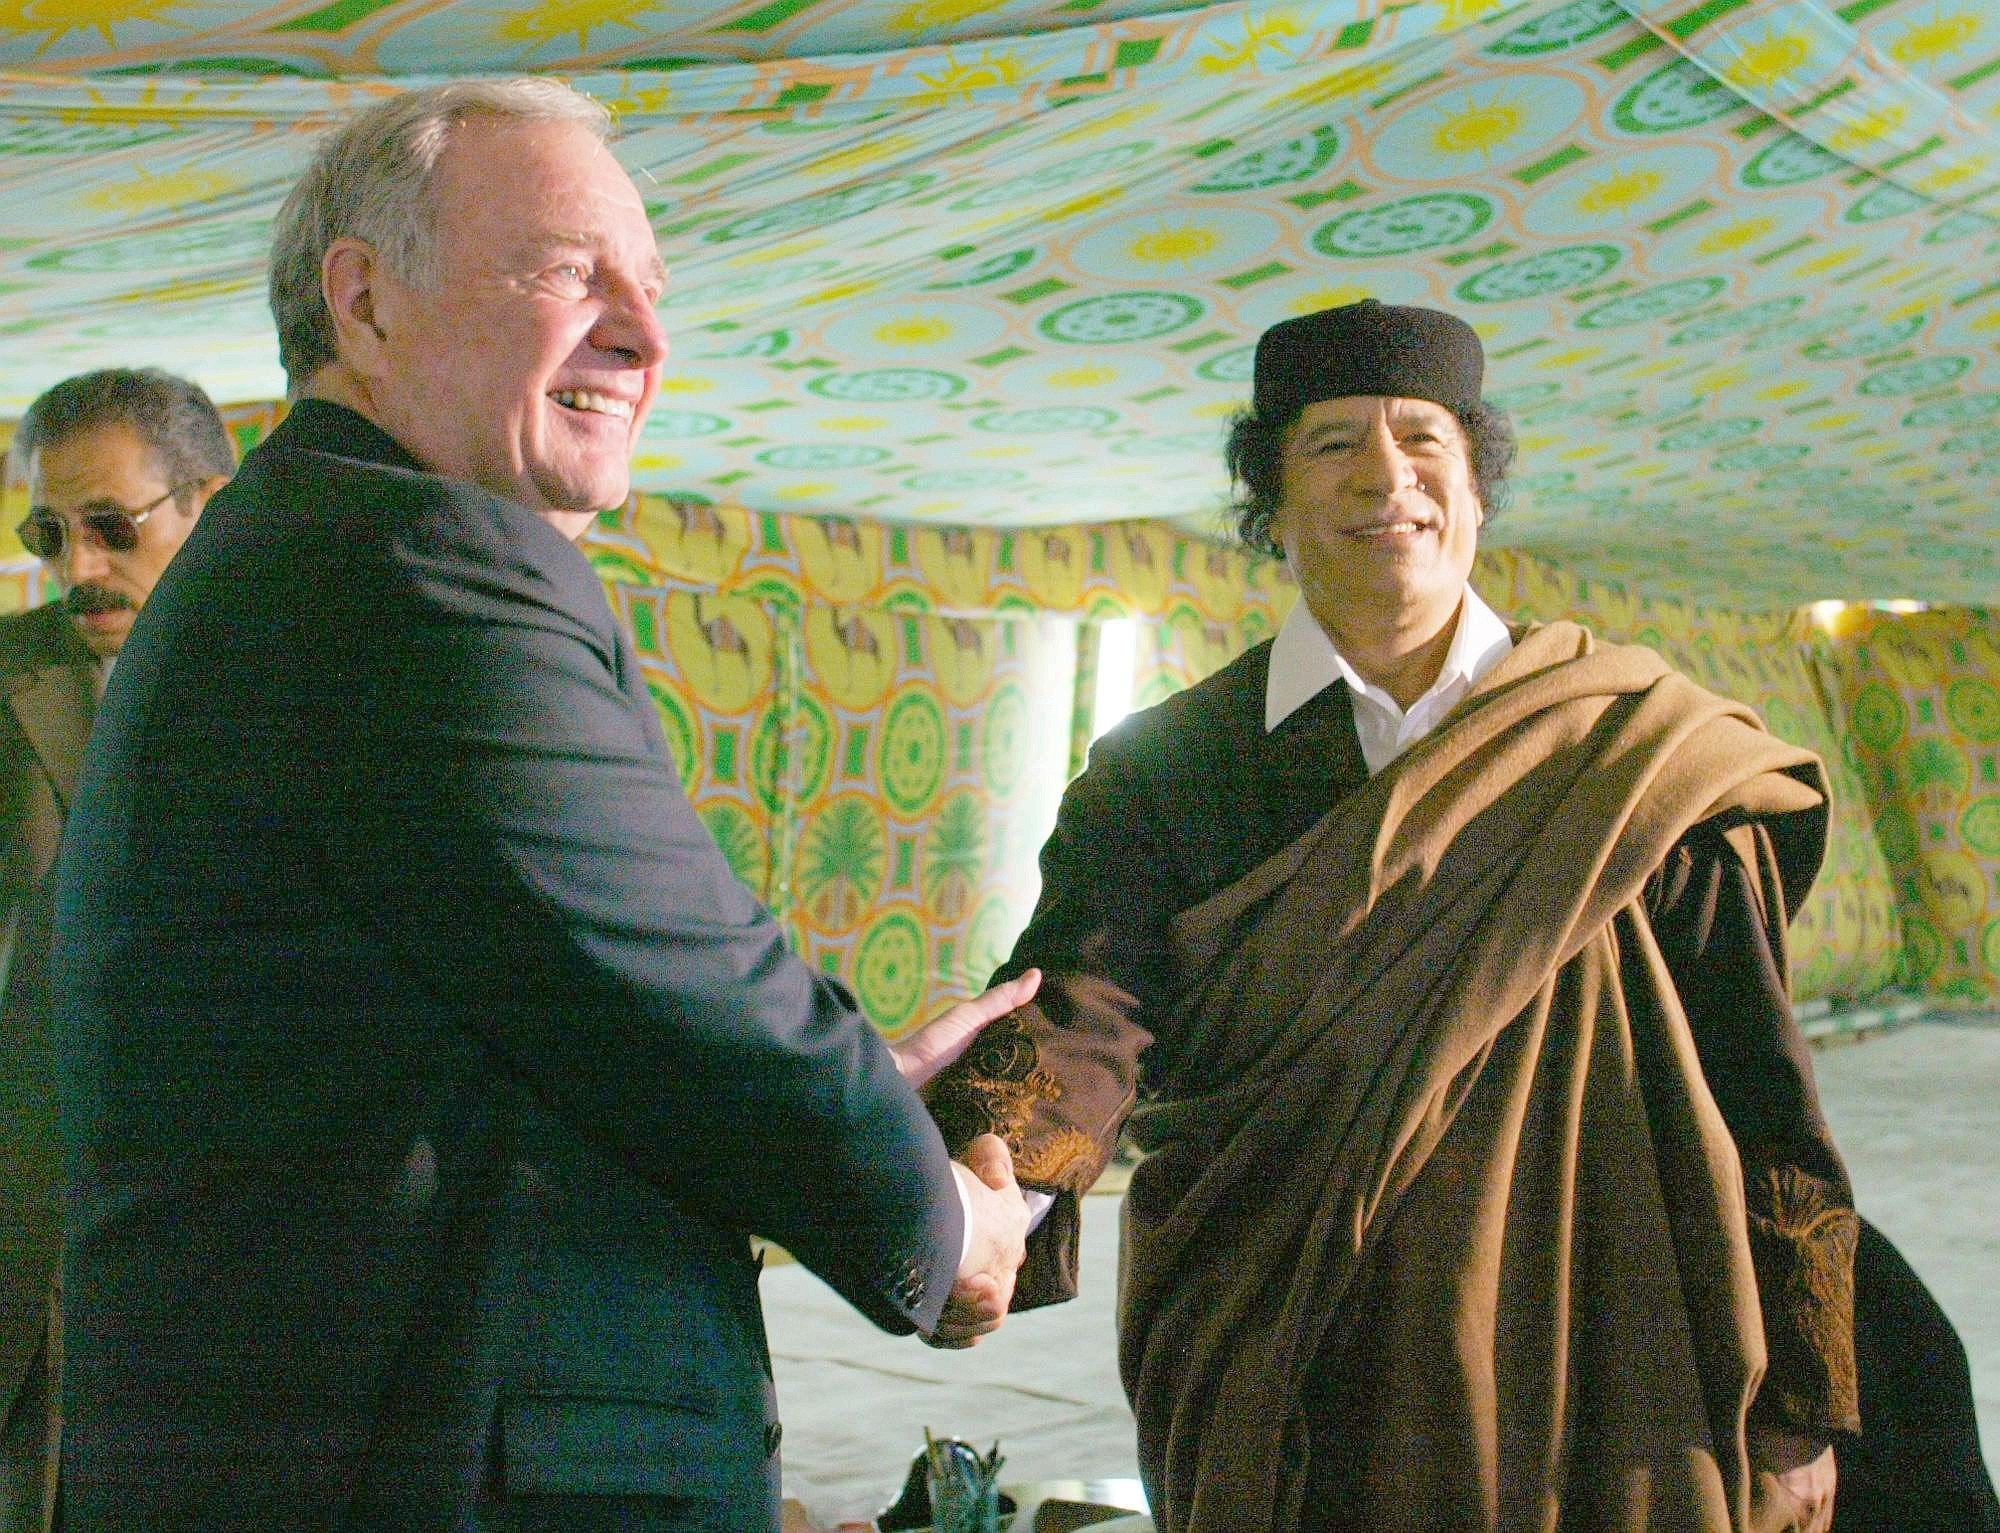 Händeschütteln mit den Staatsführern der Welt: Im Dezember 2004 trifft Gaddafi Kanadas Premierminister Paul Martin - in einem Beduinenzelt, wo sich Gaddafi gerne in Szene setzte.